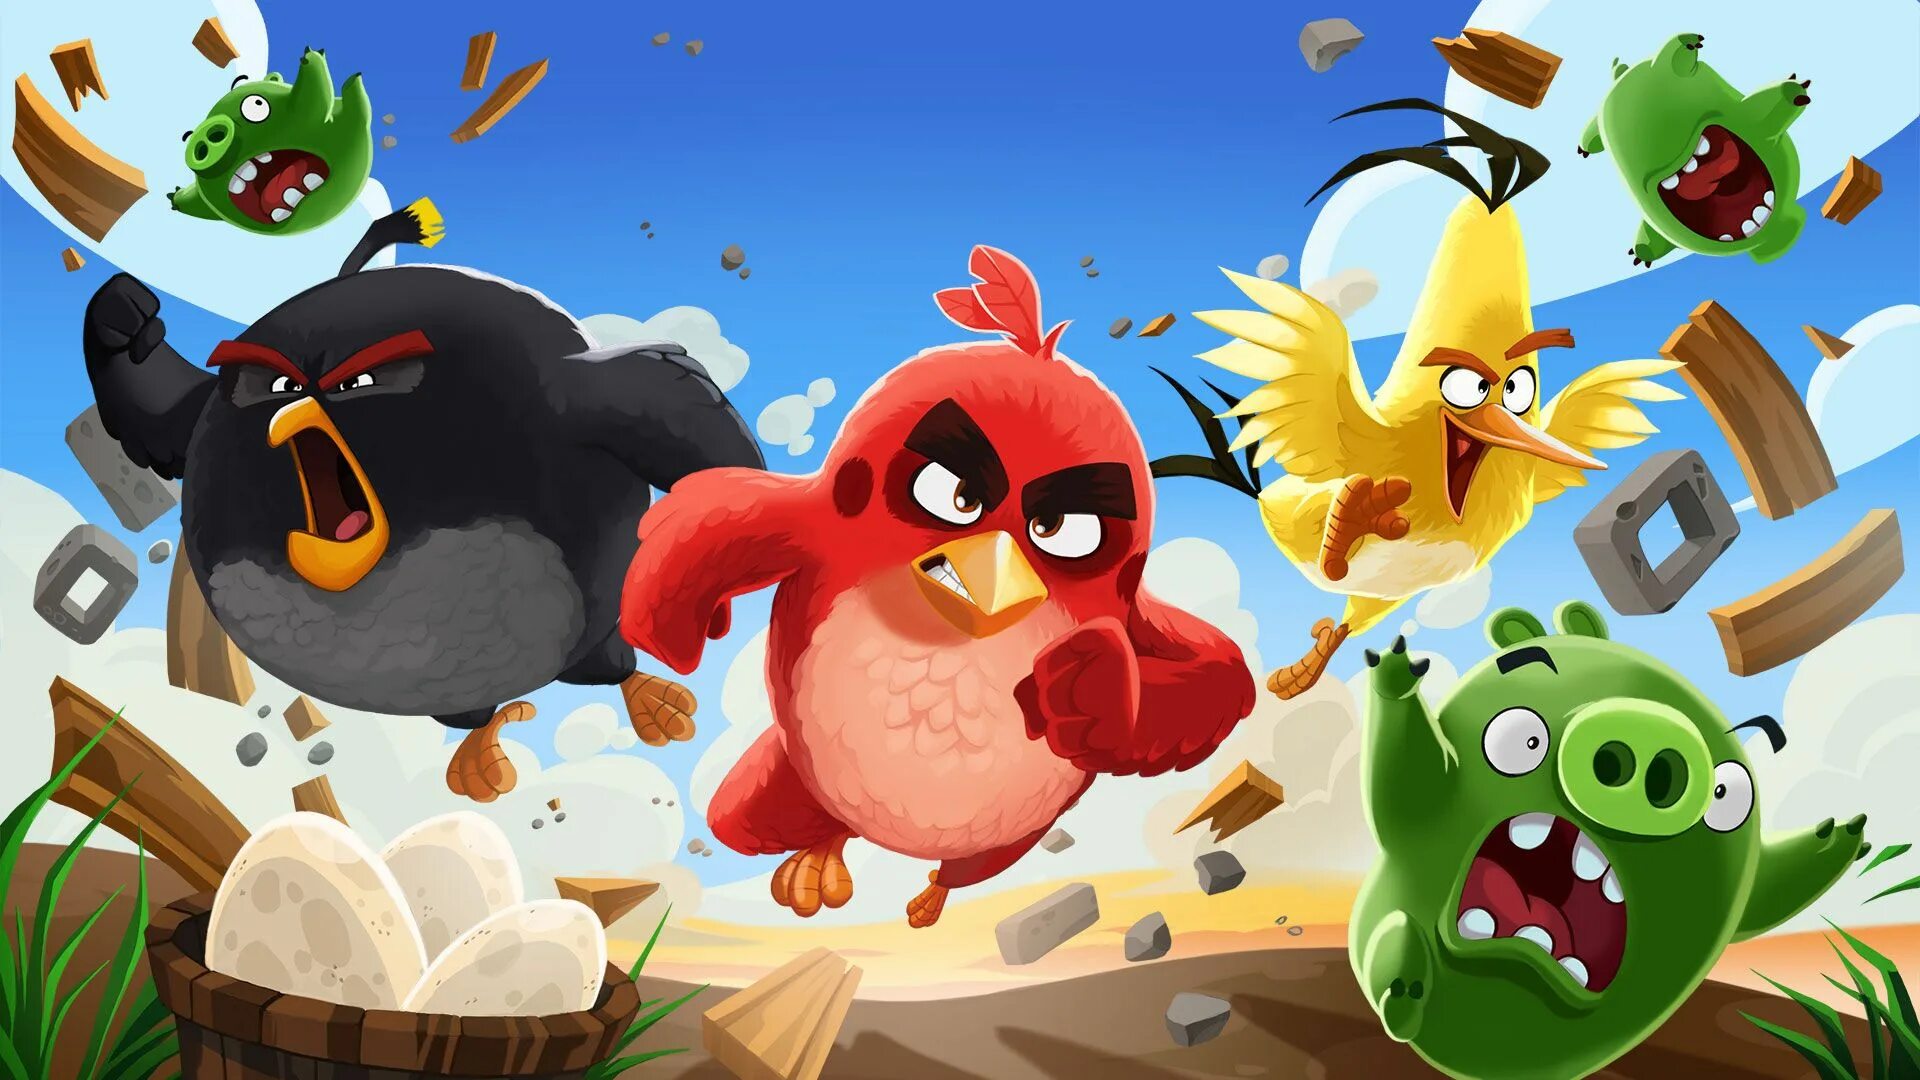 Angry birds новая. Энгри бердз злые птички. Смешарики и Энгри бердз. Ангрибёрдс злые птенчики. Angry Birds 2 игра птички.